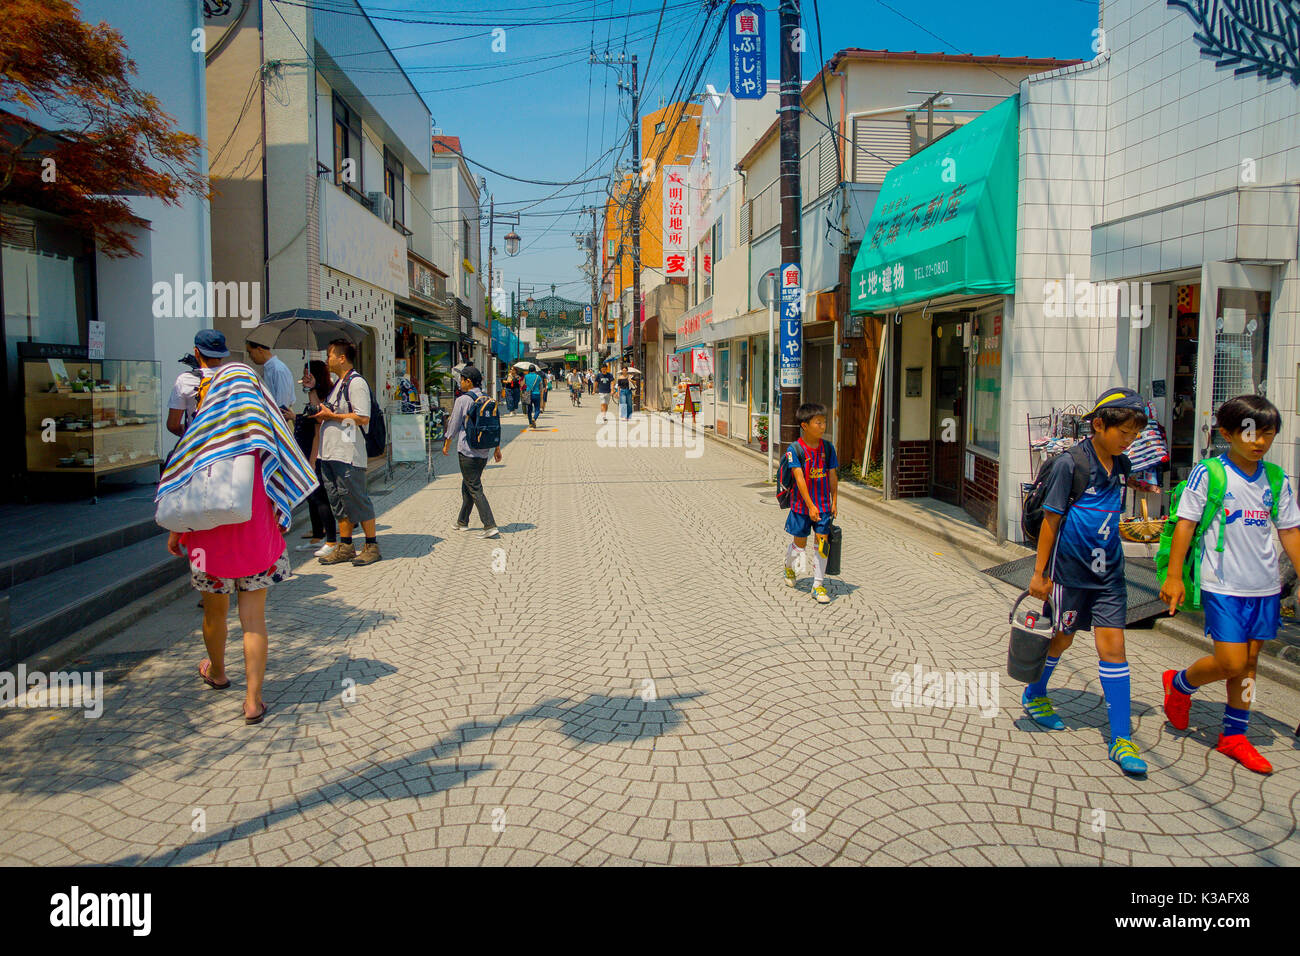 TOKYO, JAPON - 28 juin 2017 : des personnes non identifiées, marche à Komachi-dori, à Kamakura à Tokyo au Japon, une rue élégante dans l'ancienne ville de Kamakura avec restaurants et magasins à la mode Historique Banque D'Images